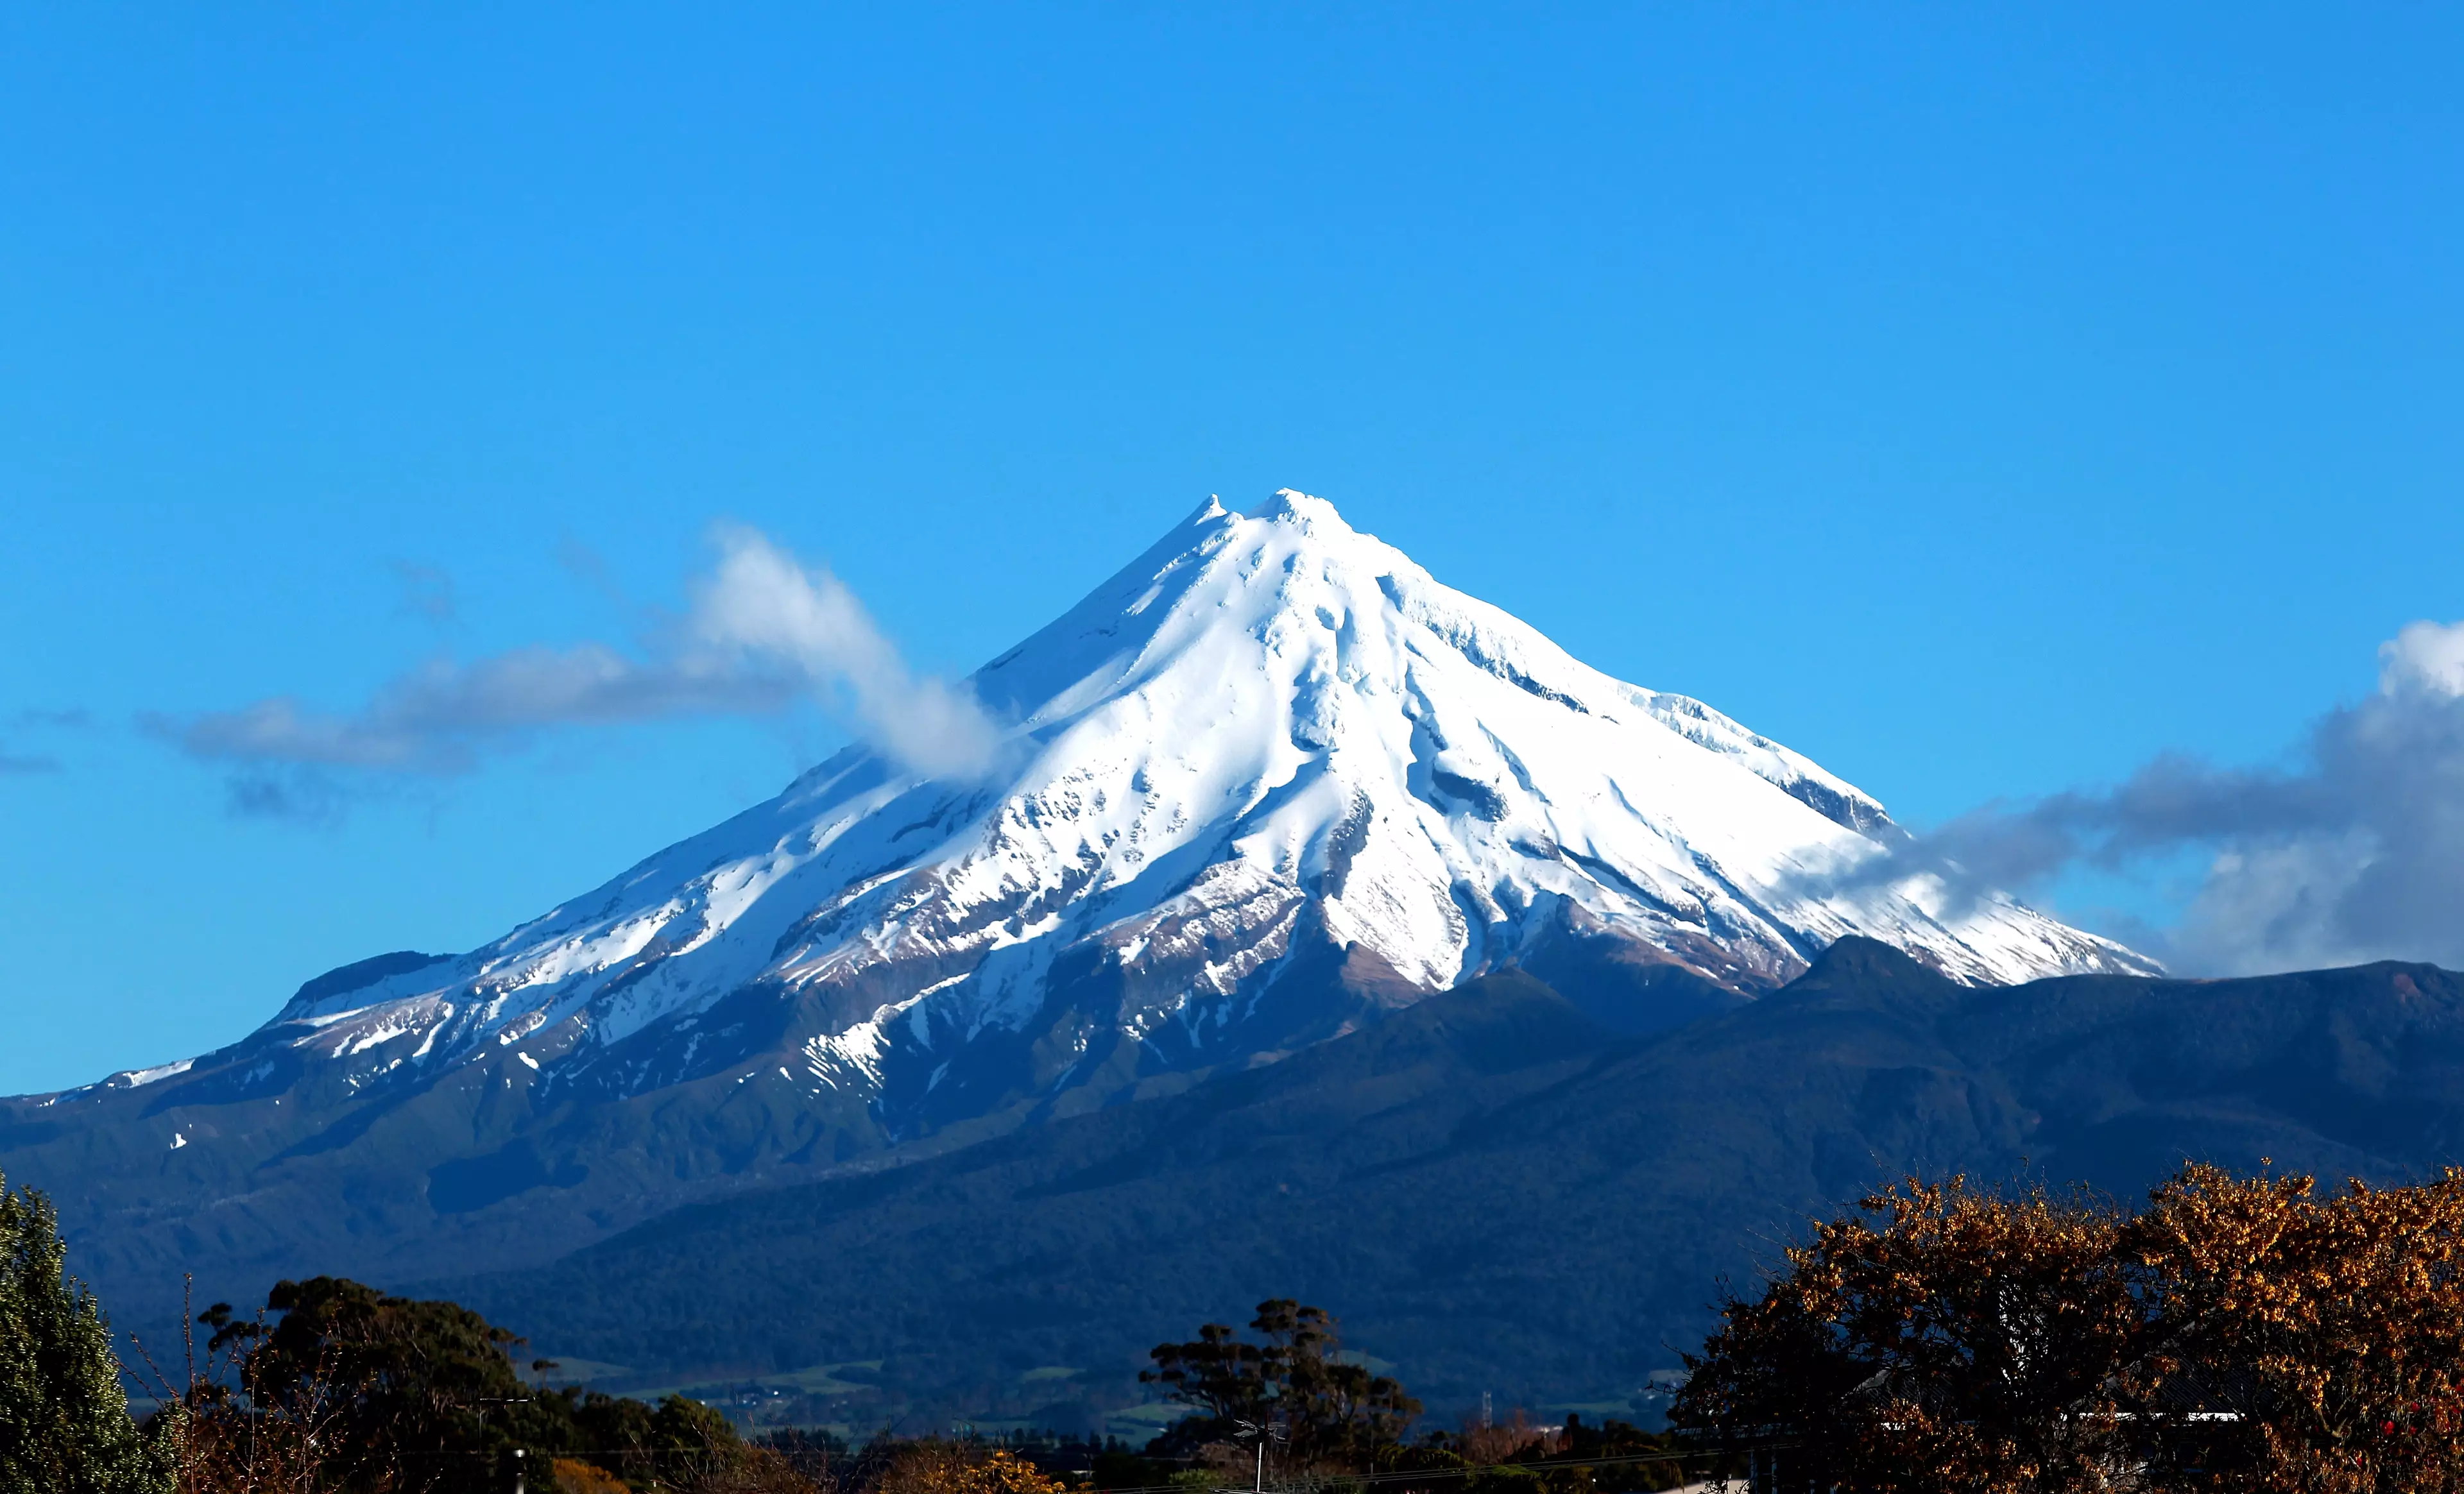 New Zealand's Mount Taranaki Eruption A Matter Of 'When' Not 'If'